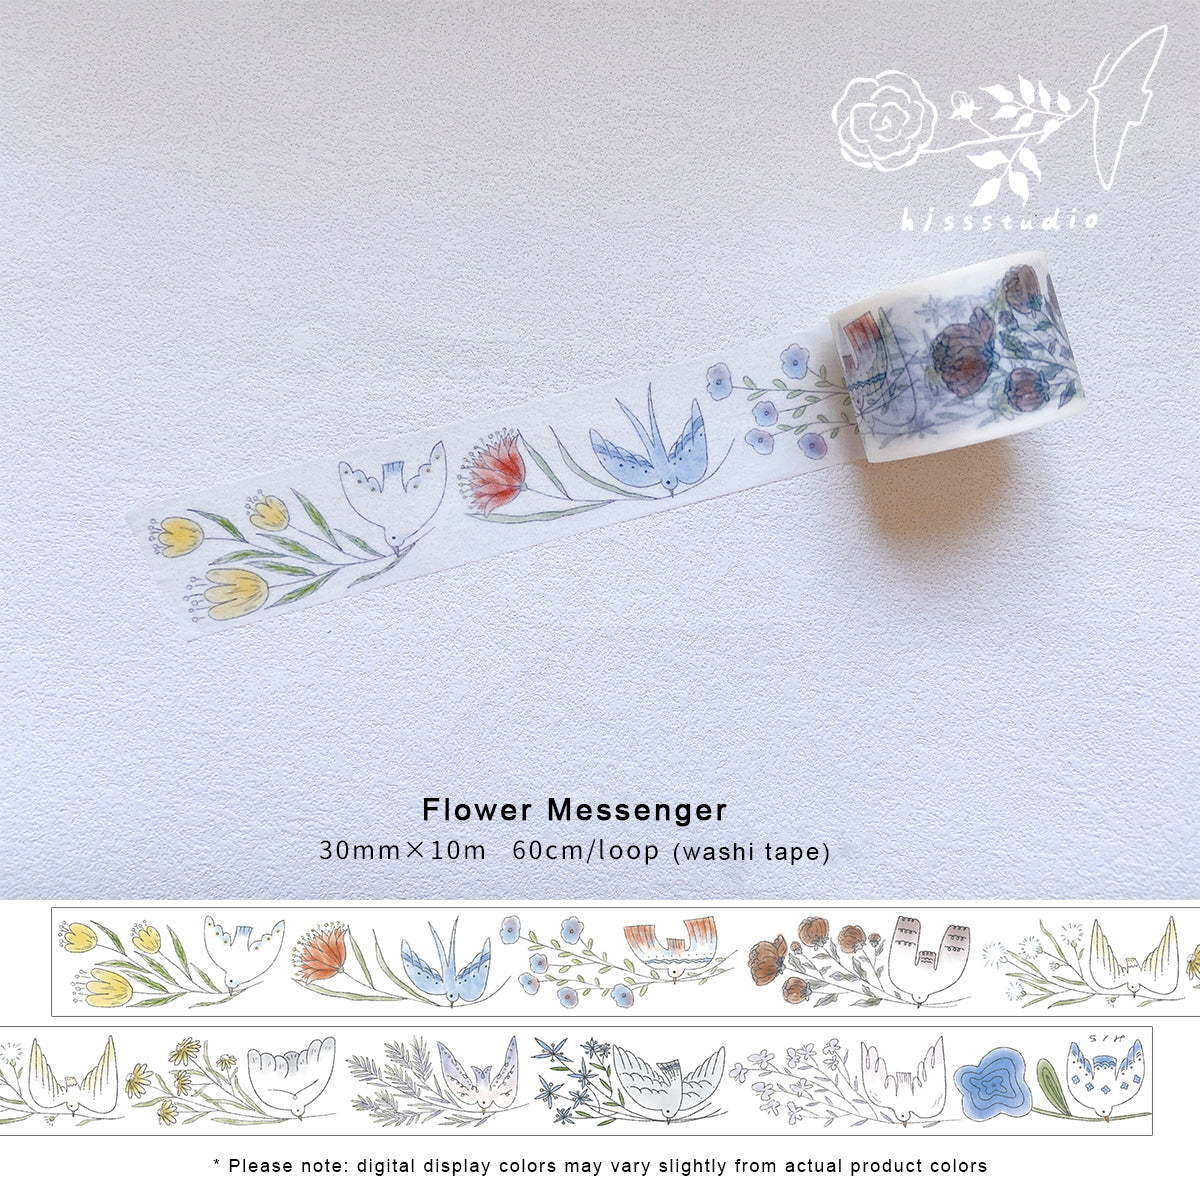 HJSSSTUDIO Masking Tape: Flower Messenger 1